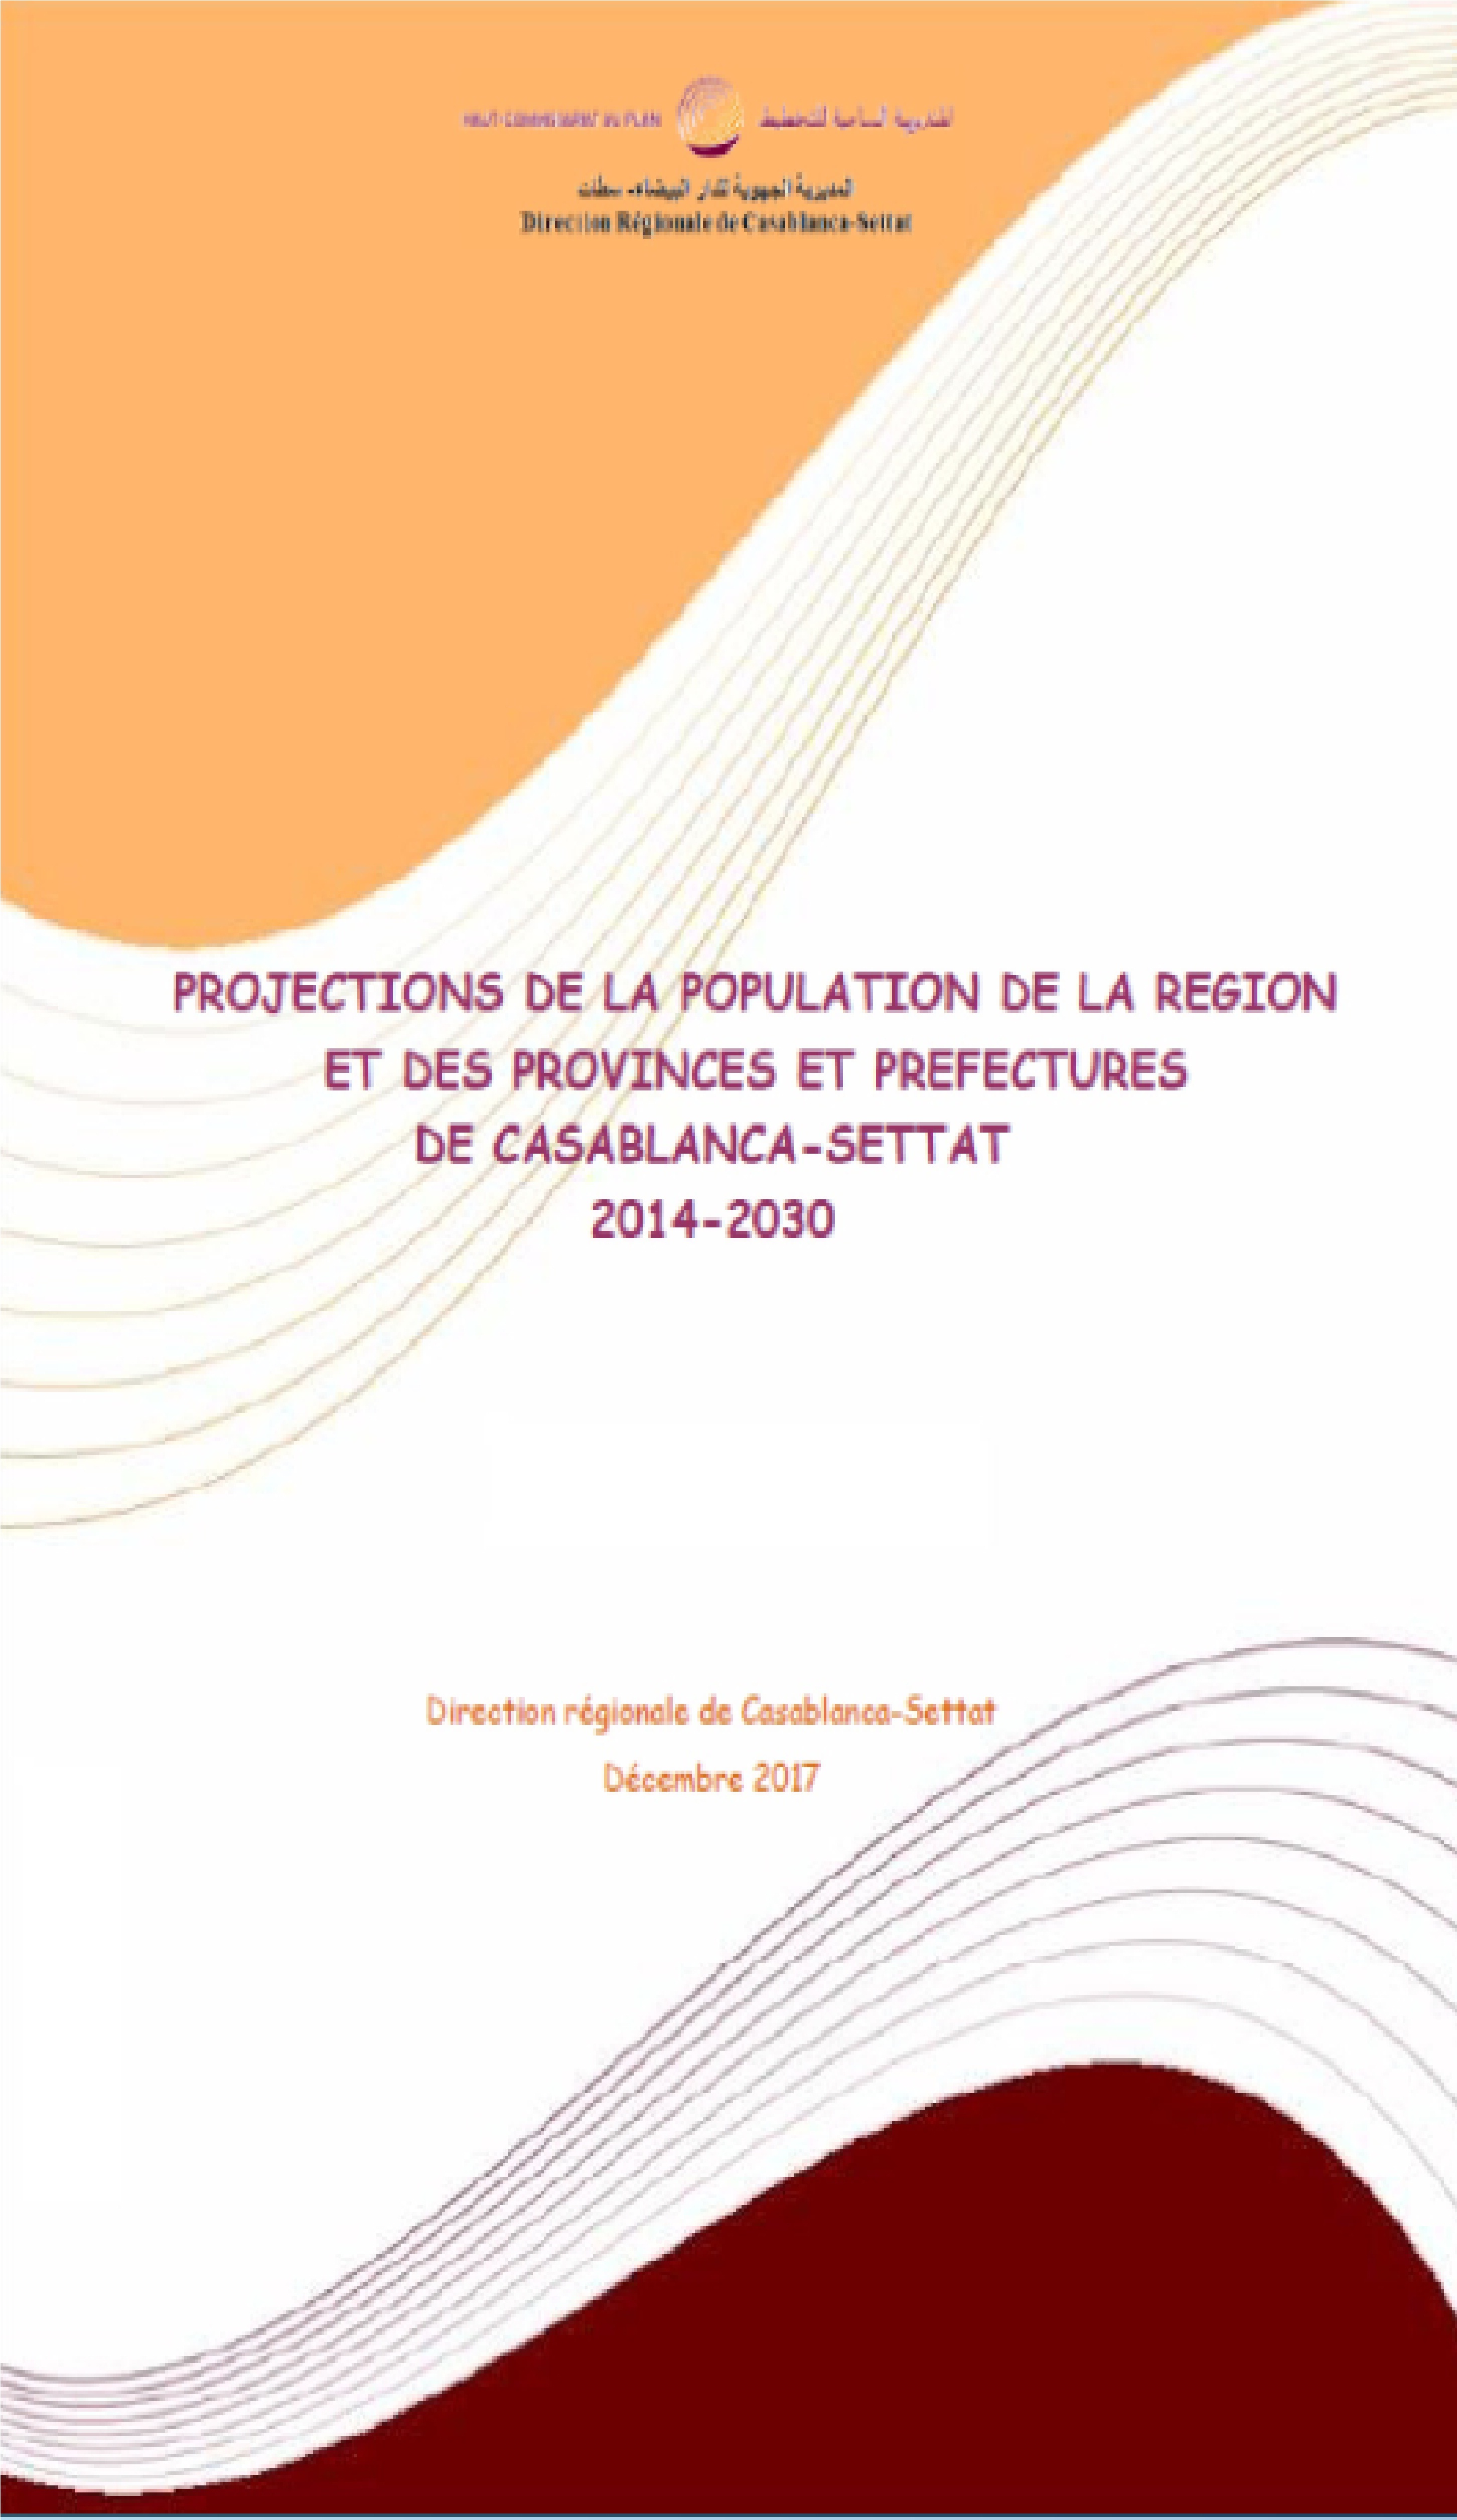 PROJECTIONS DE LA POPULATION 2014-2030